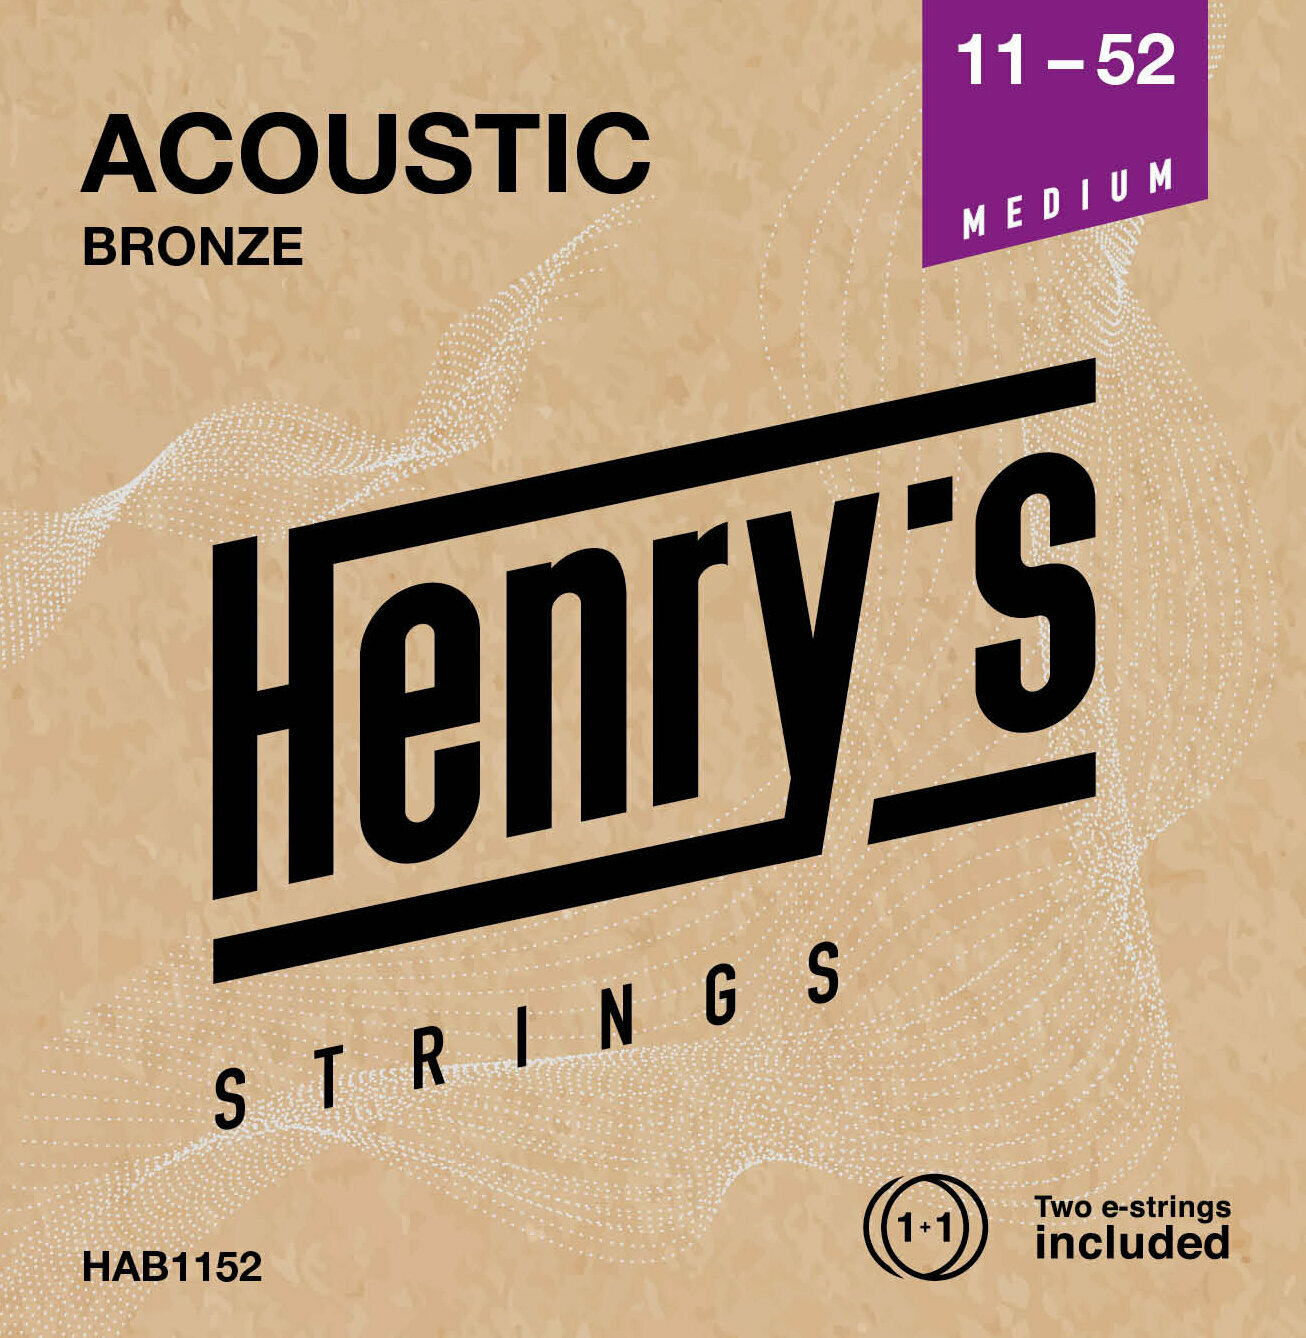 Guitarstrenge Henry's Bronze 11-52